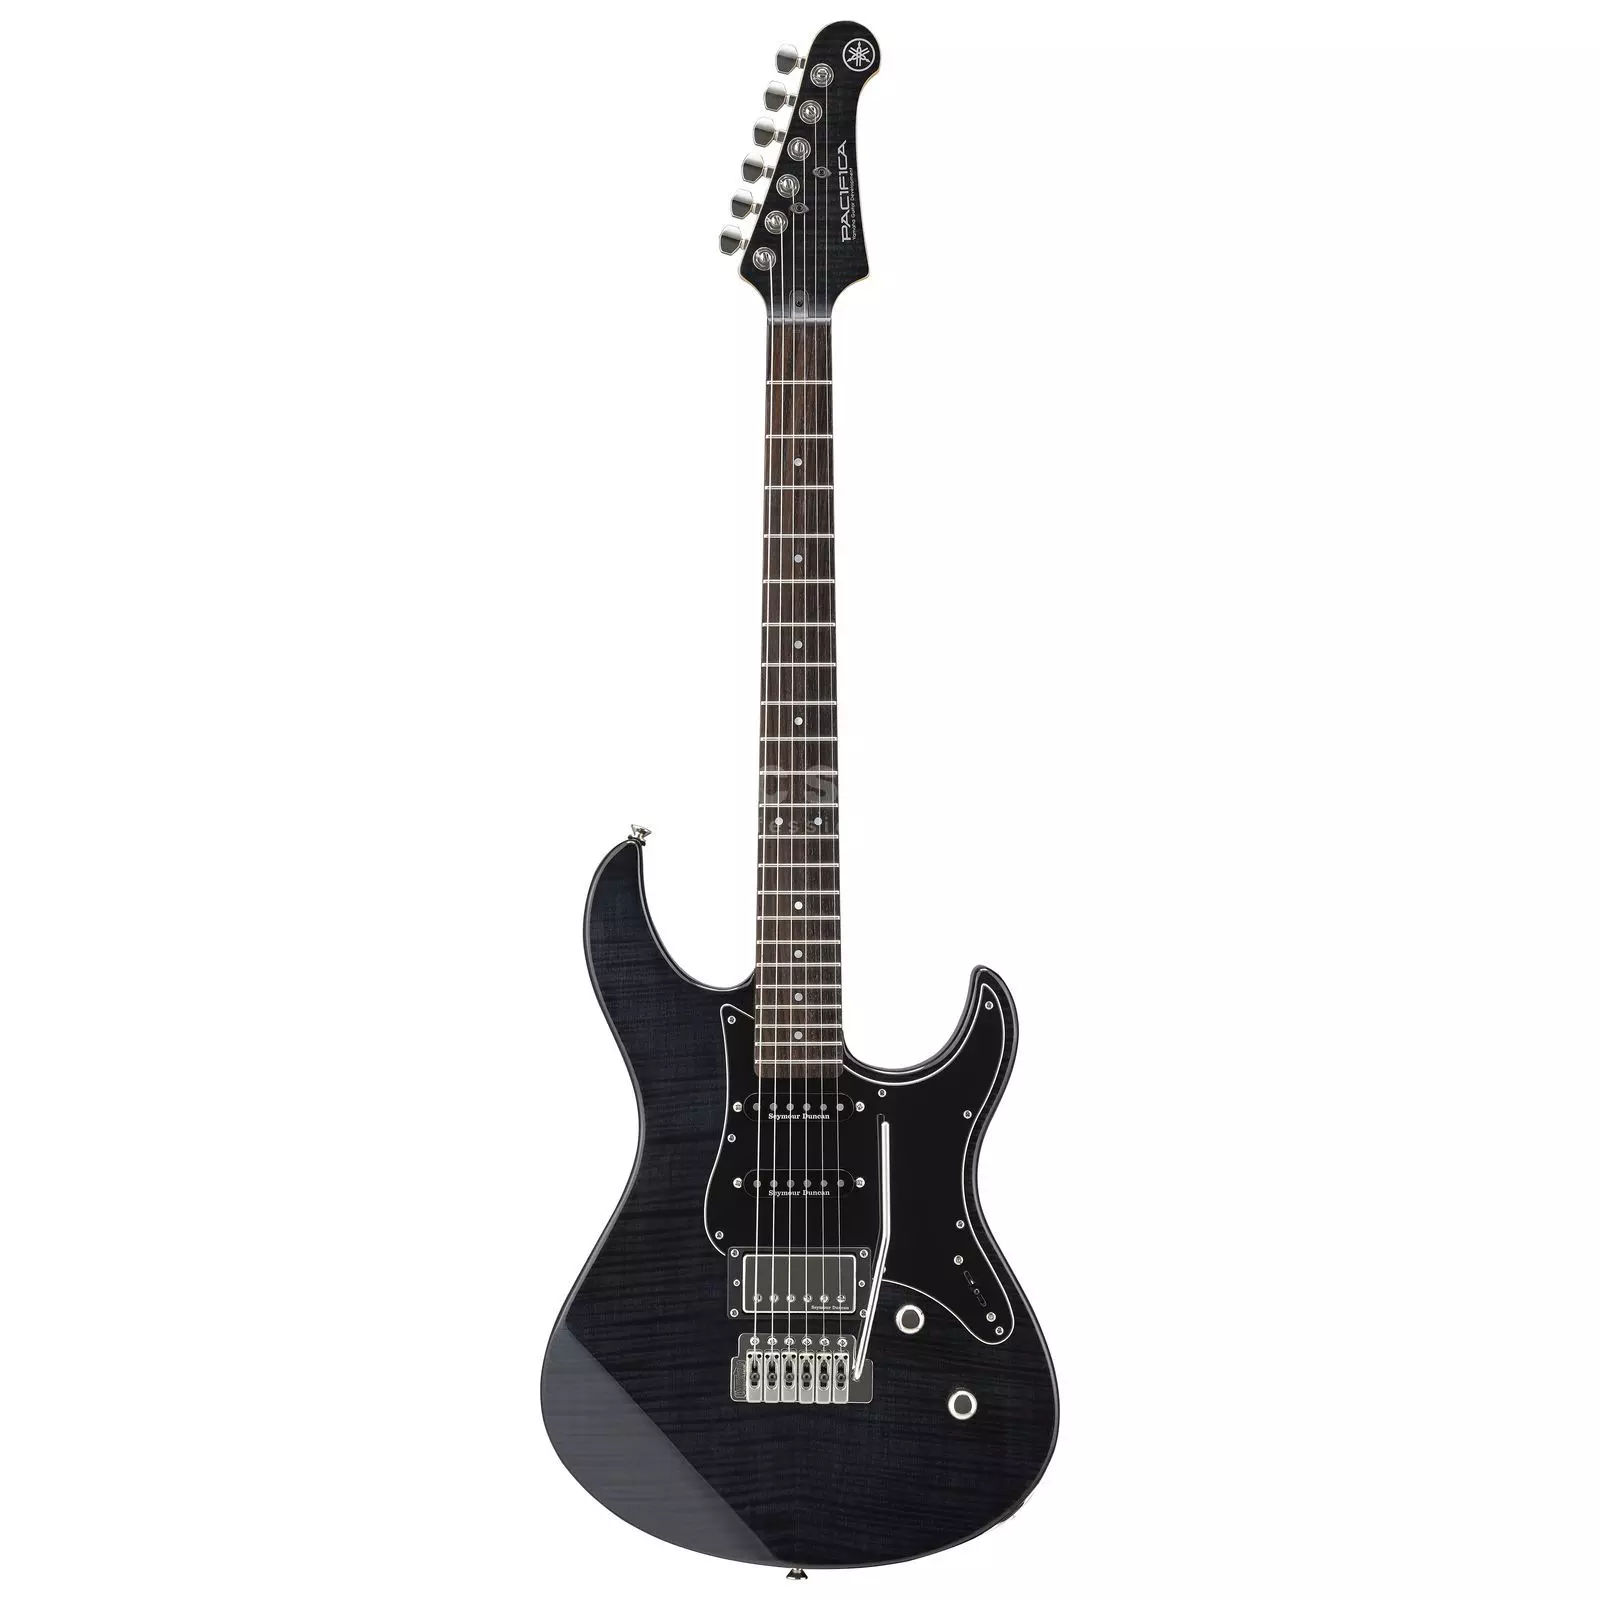 Billede af Yamaha Pacifica 612V IIFM El-guitar (Translucent Black)